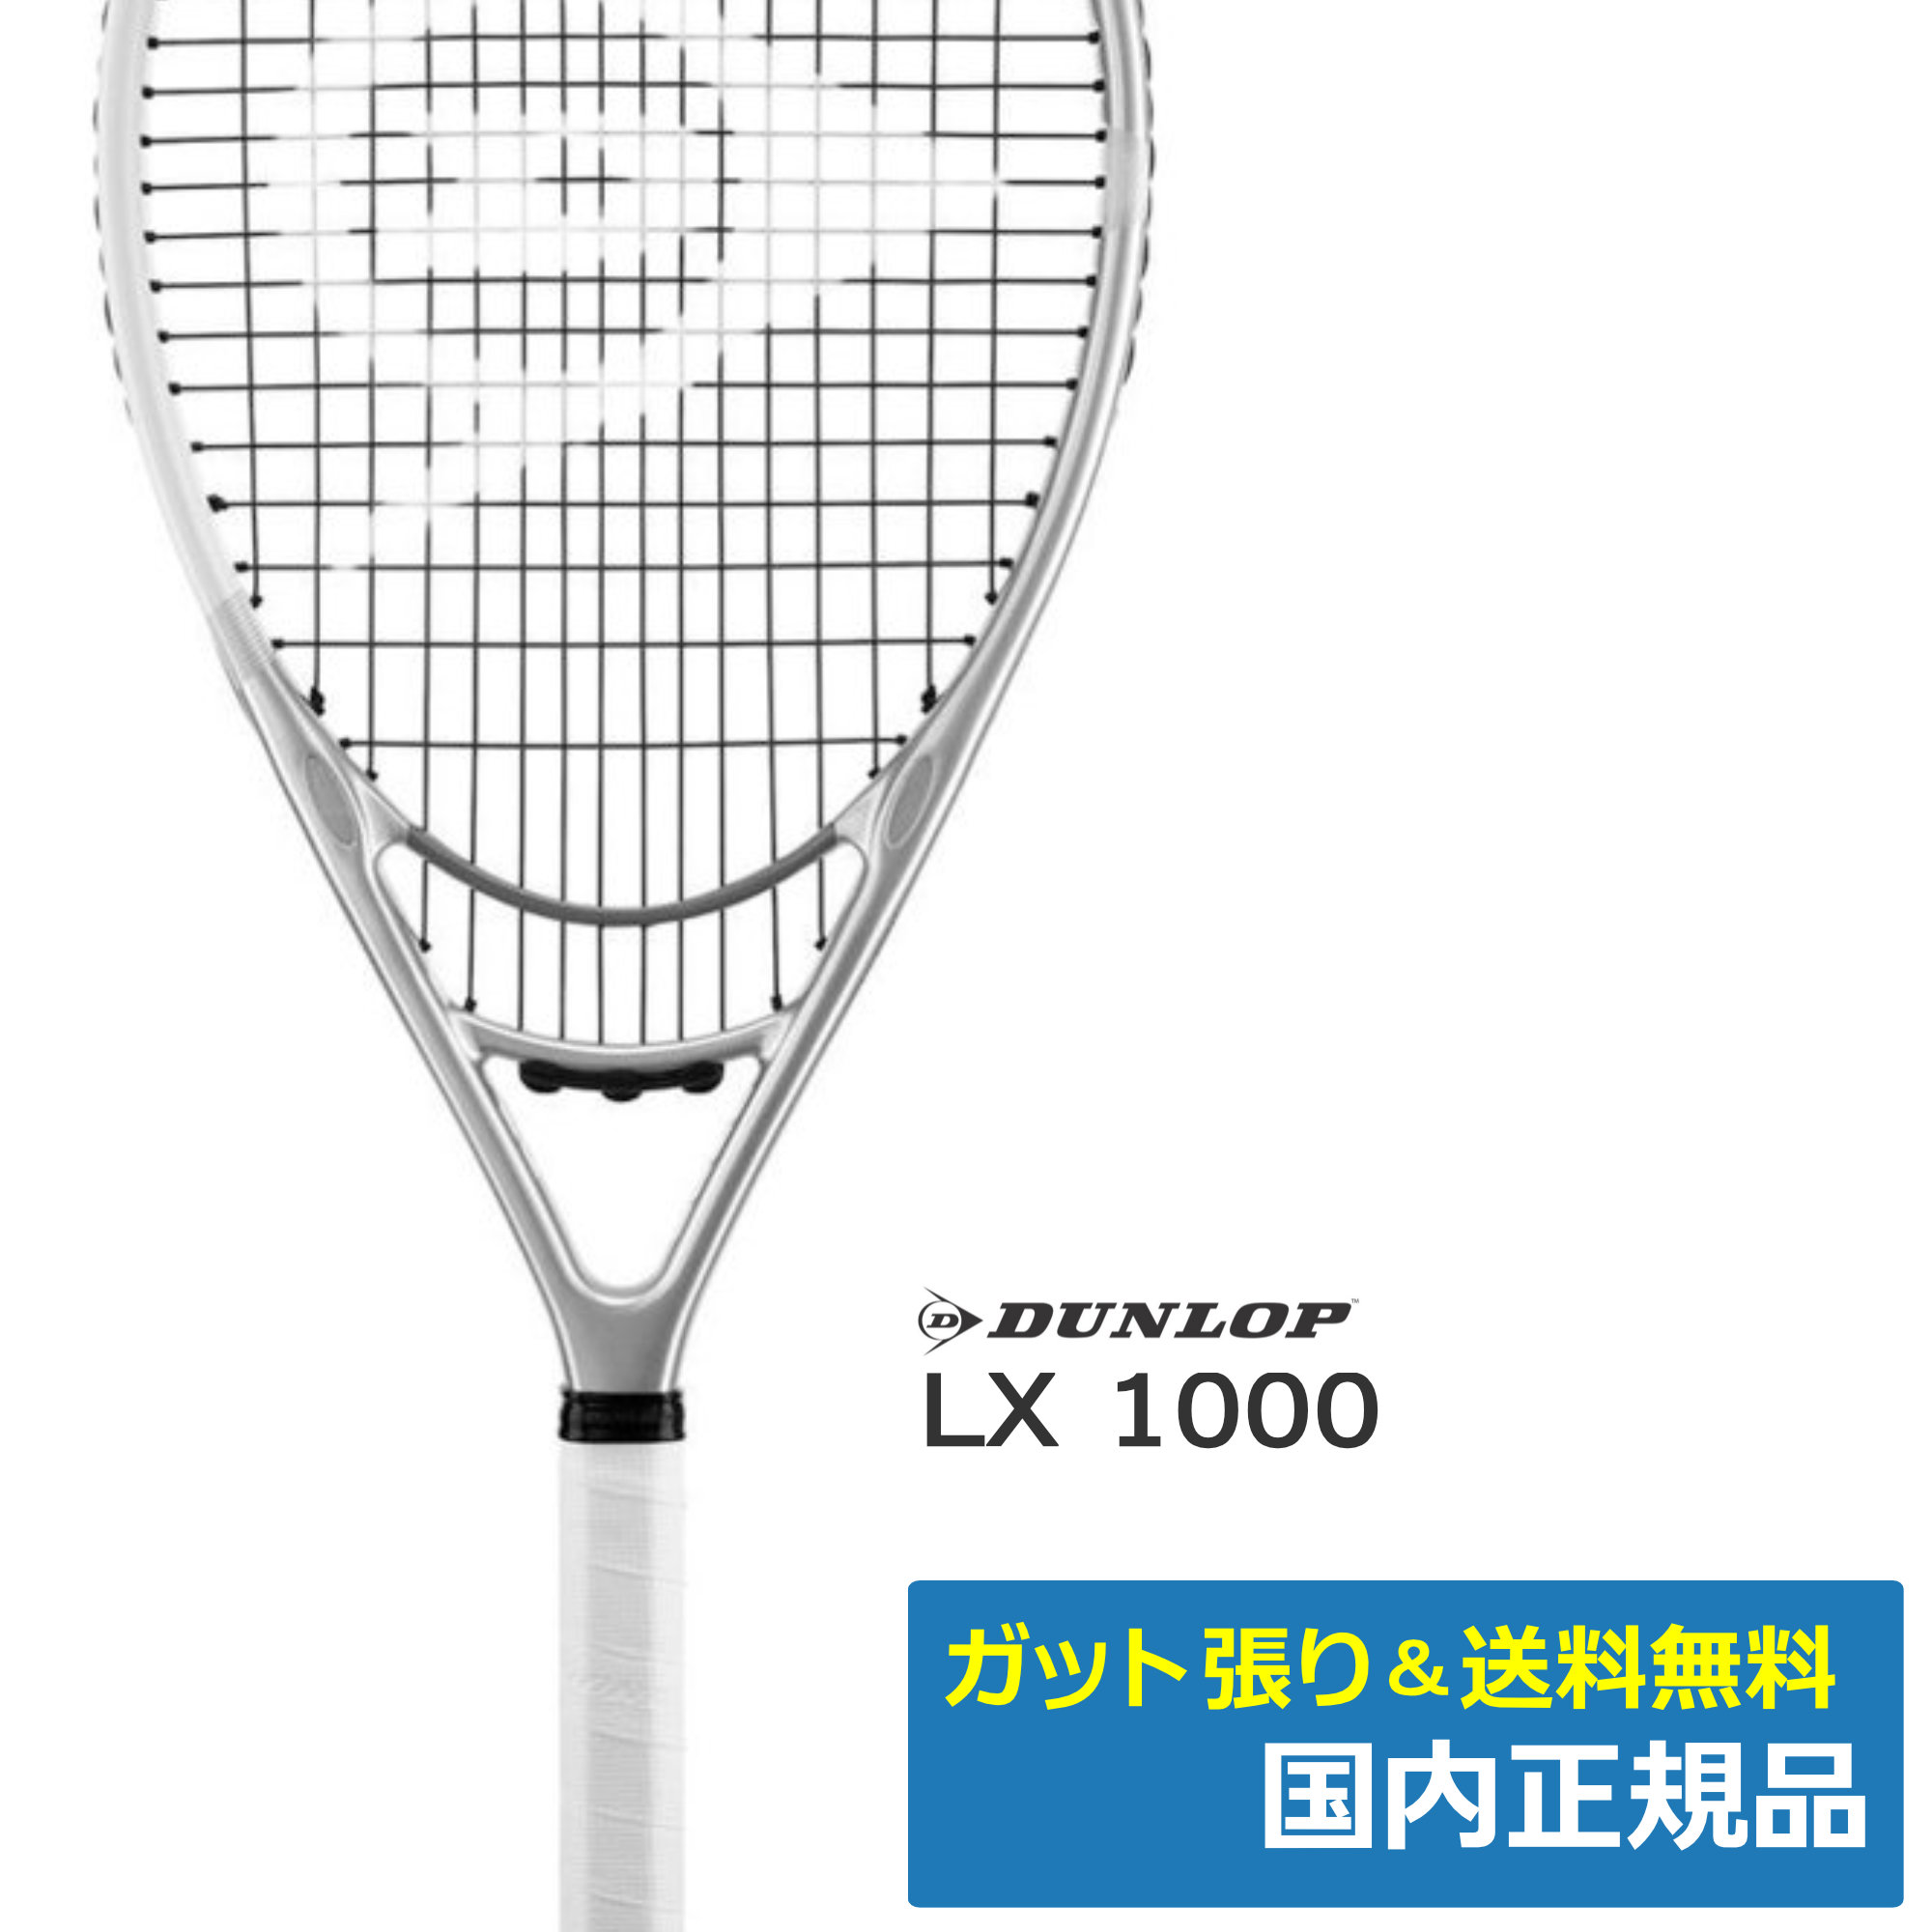 ダンロップ(DUNLOP)LX 1000 シルバー×ホワイト / DSS22109 | テニス ...